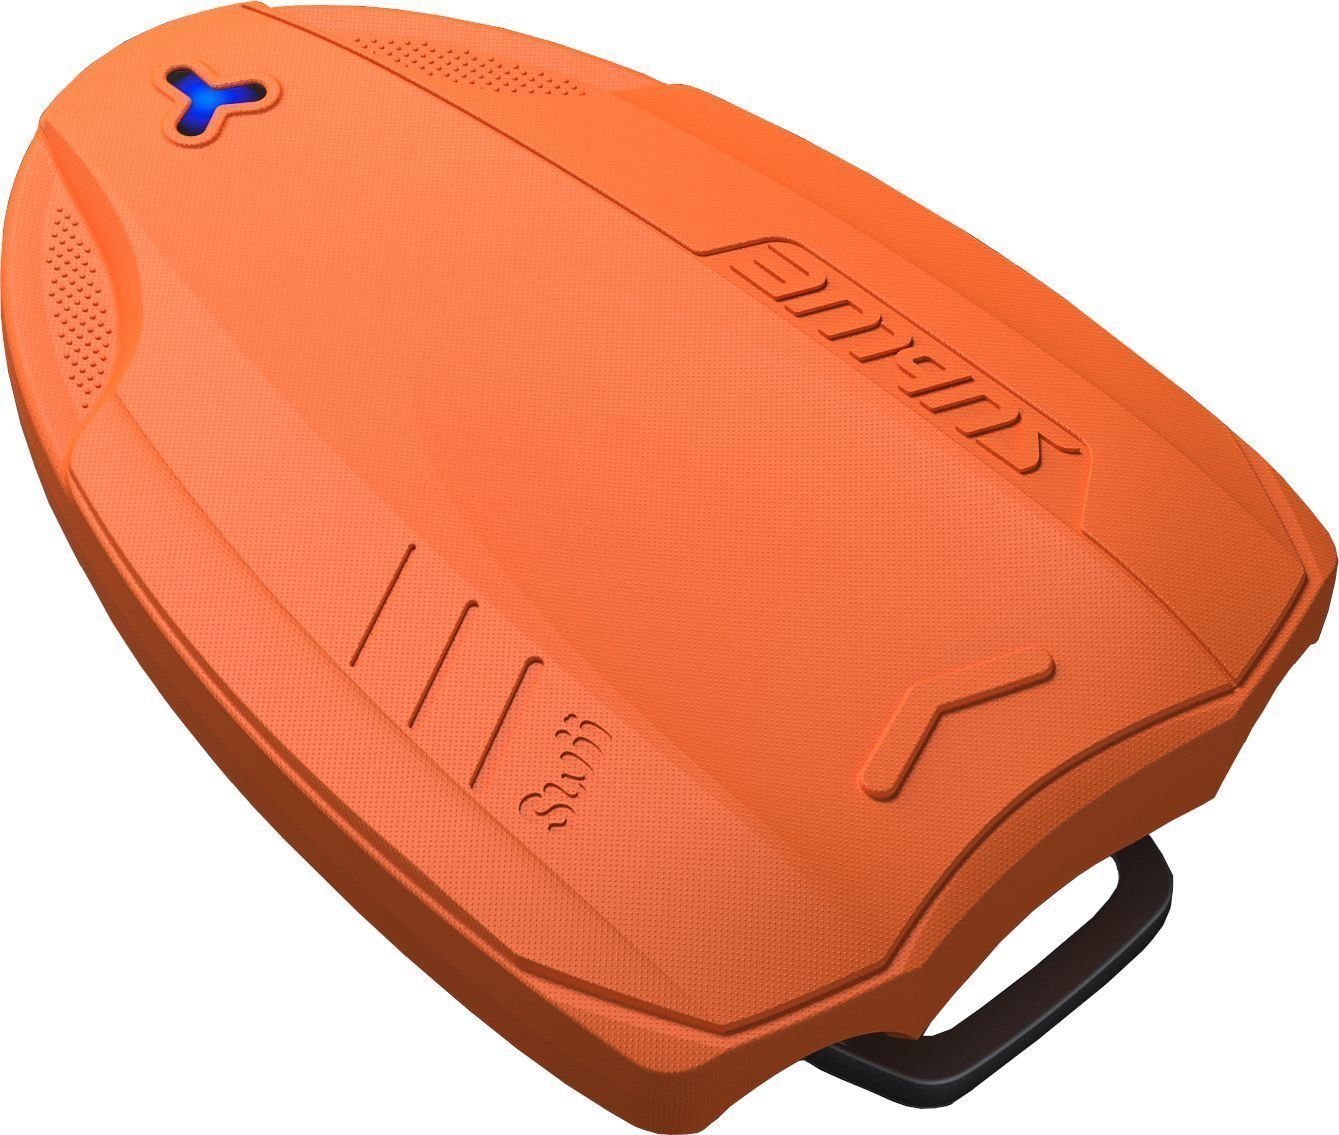 Podvodni skuter Sublue Kickboard Swii Orange